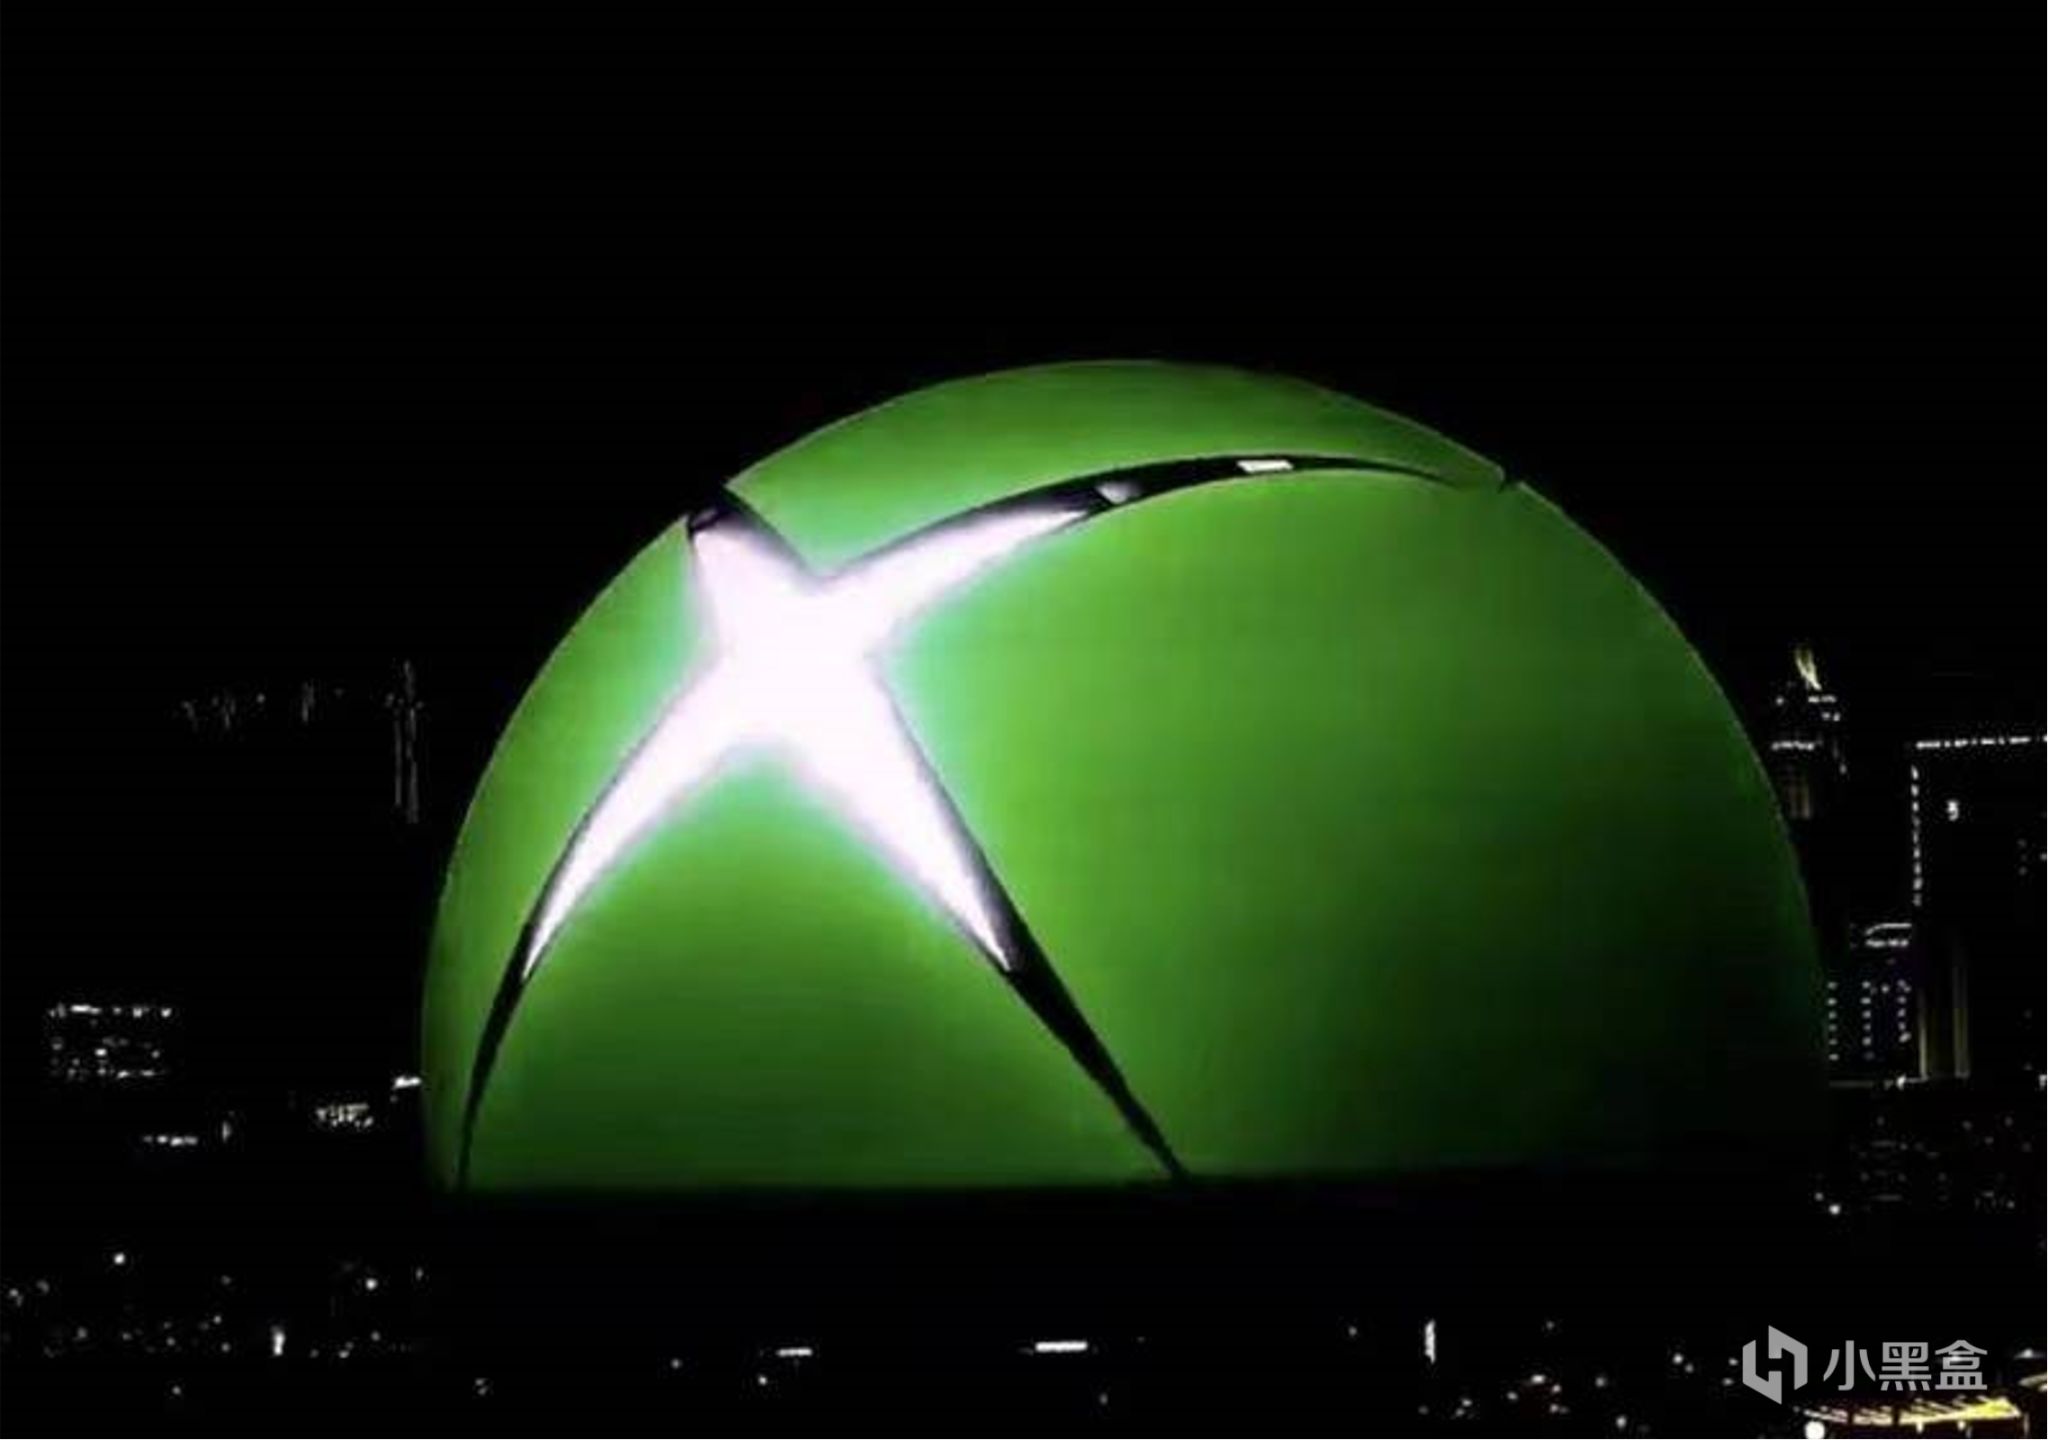 【主機遊戲】壕無人性！微軟在拉斯維加斯巨型球投放XBOX廣告！效果震撼！